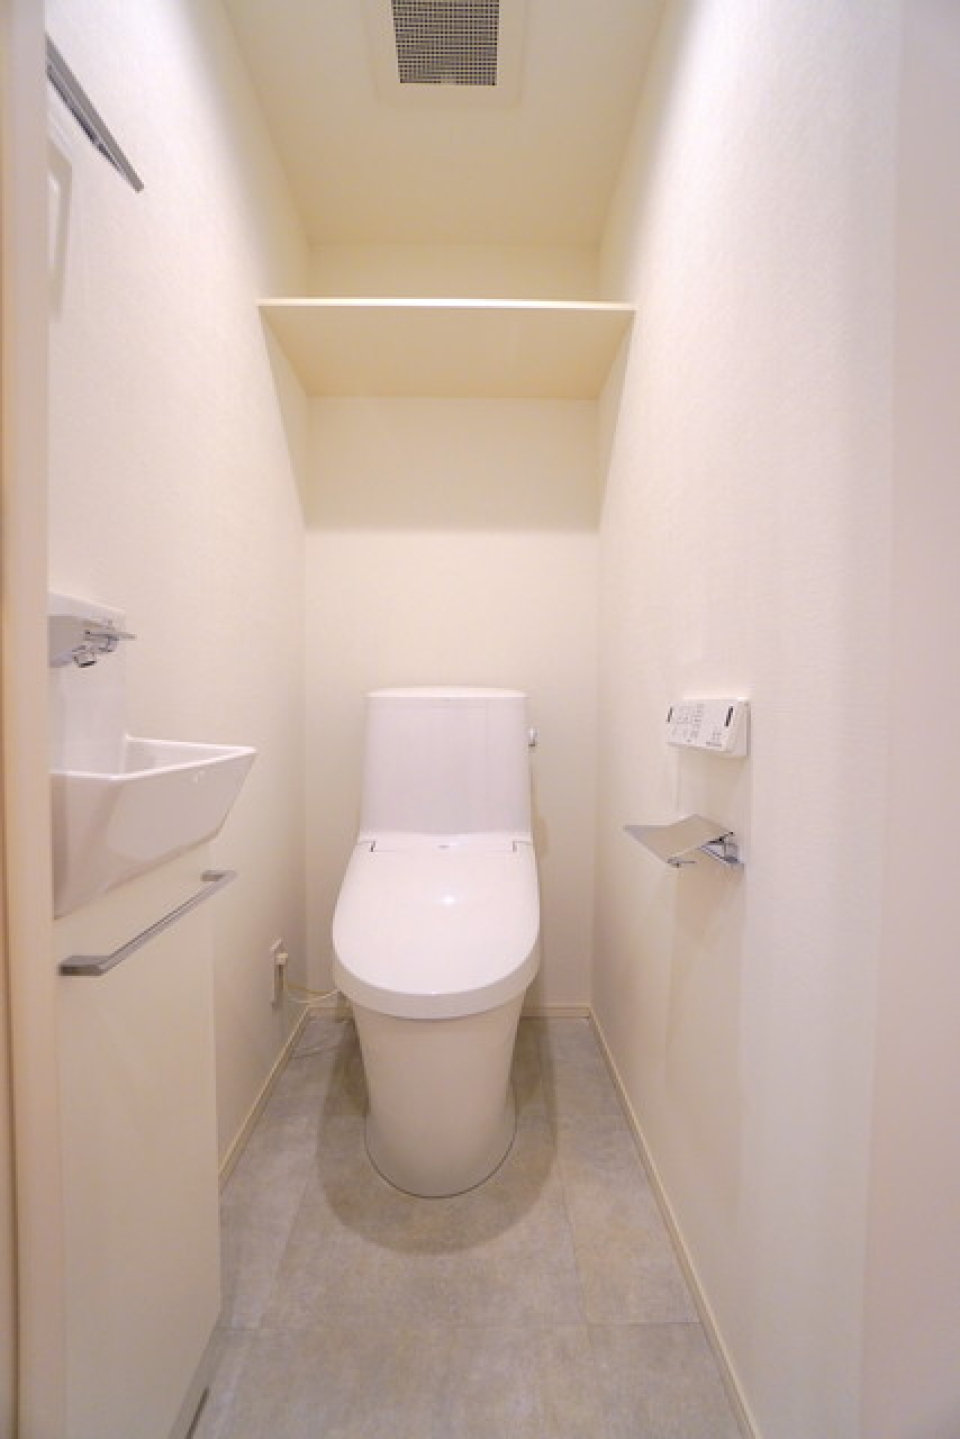 トイレはシンプルな造りになっています。
※写真は同タイプ住戸です。